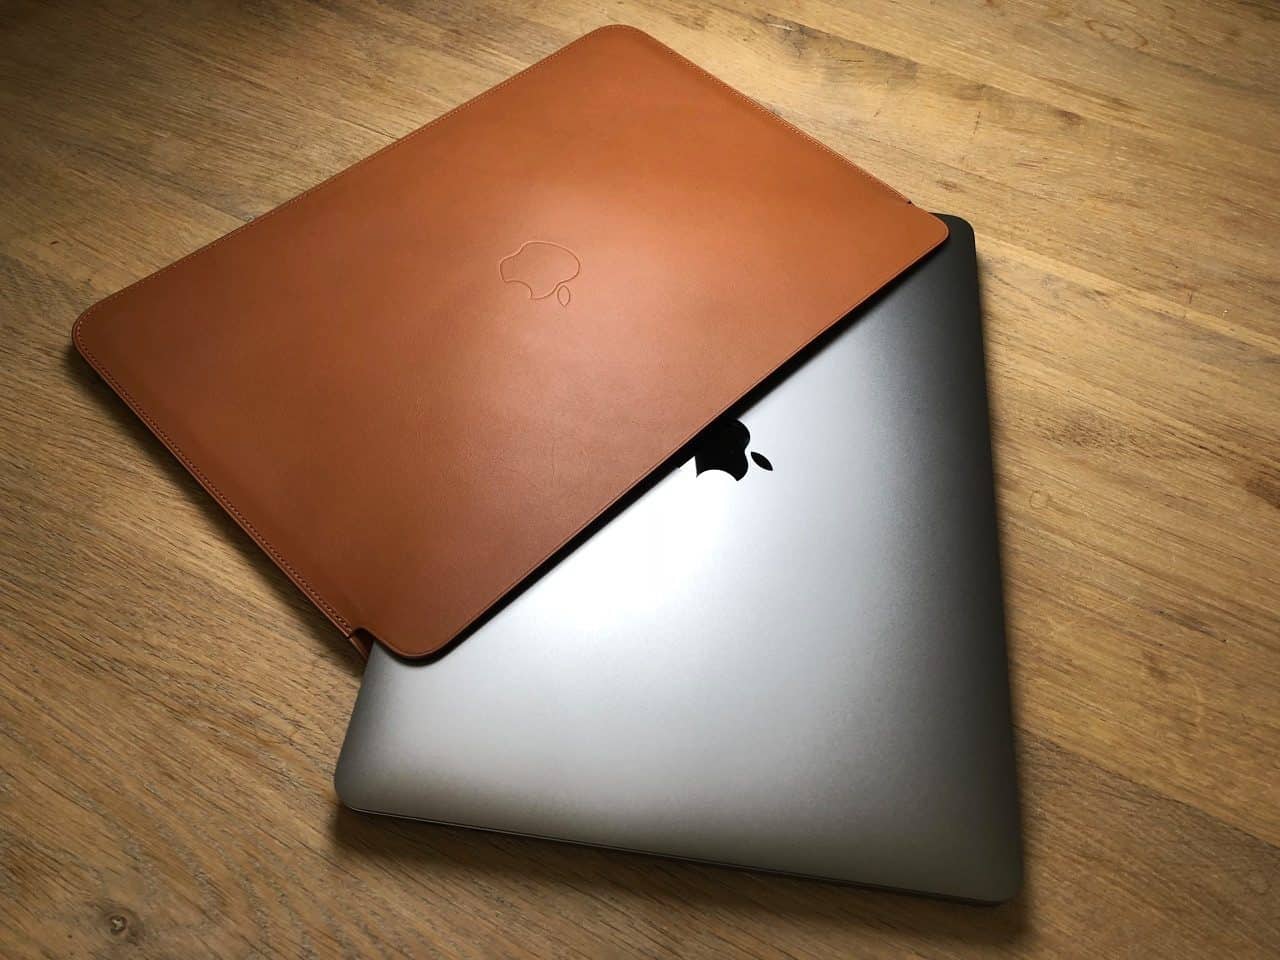 MacBook Pro schuin in Leren Sleeve.